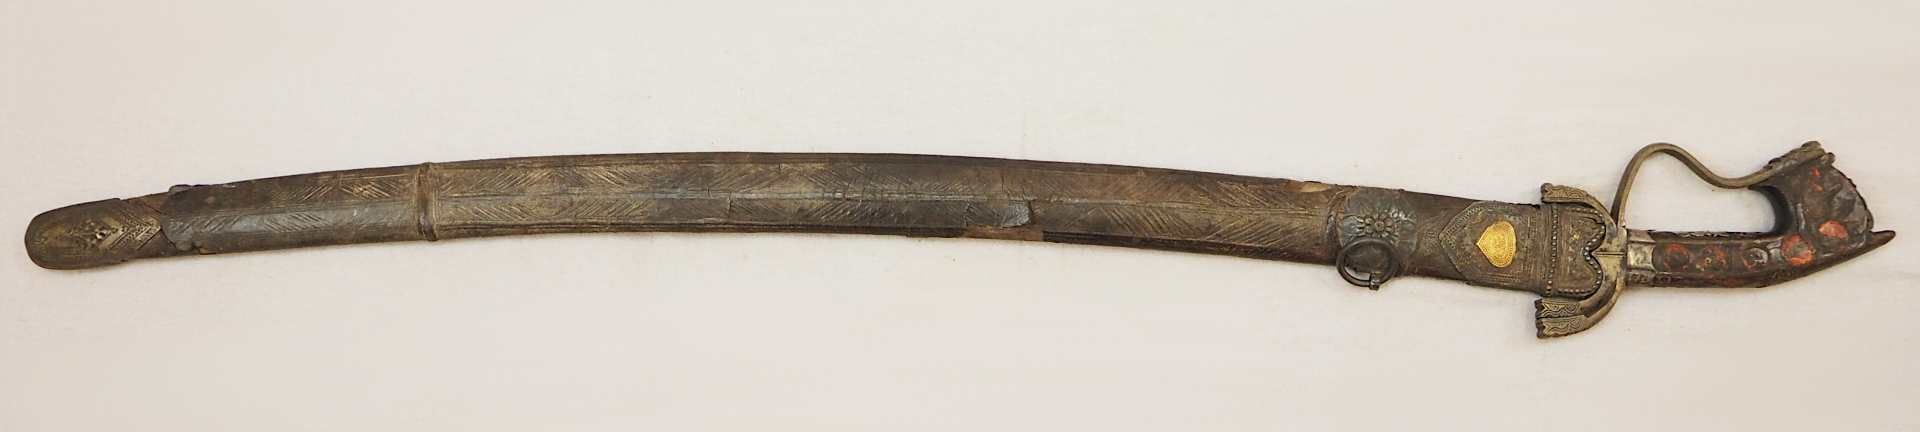 1 orientanlischer Säbel wohl 19. Jh. Klinge mit Doppelkehlung, Holzgriff mit Metallap - Bild 2 aus 5